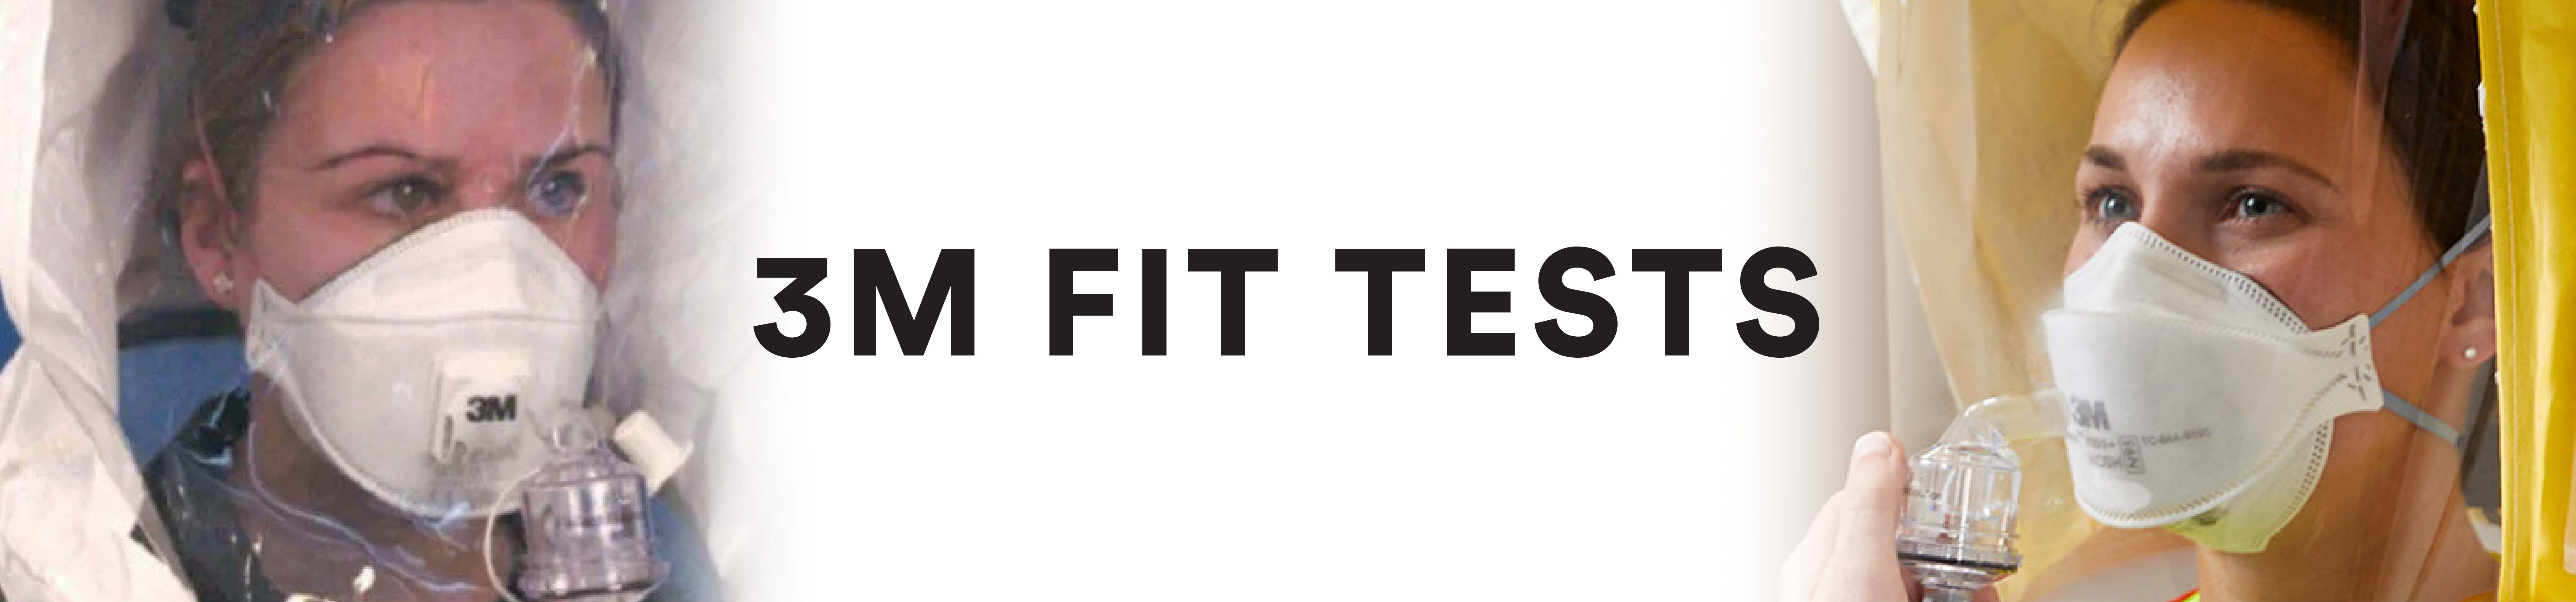 3M Fit Test Kits